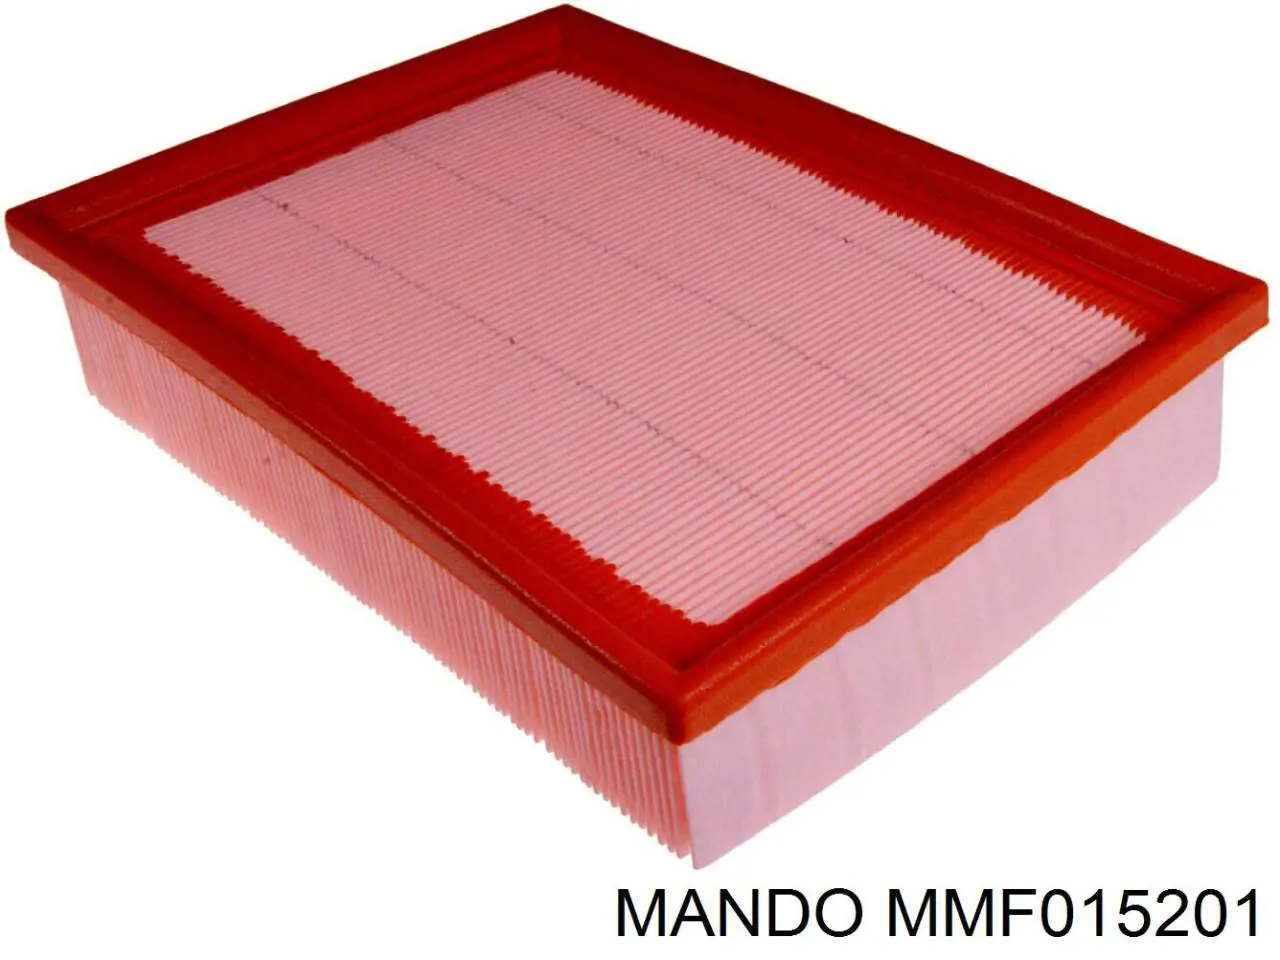 MMF015201 Mando воздушный фильтр